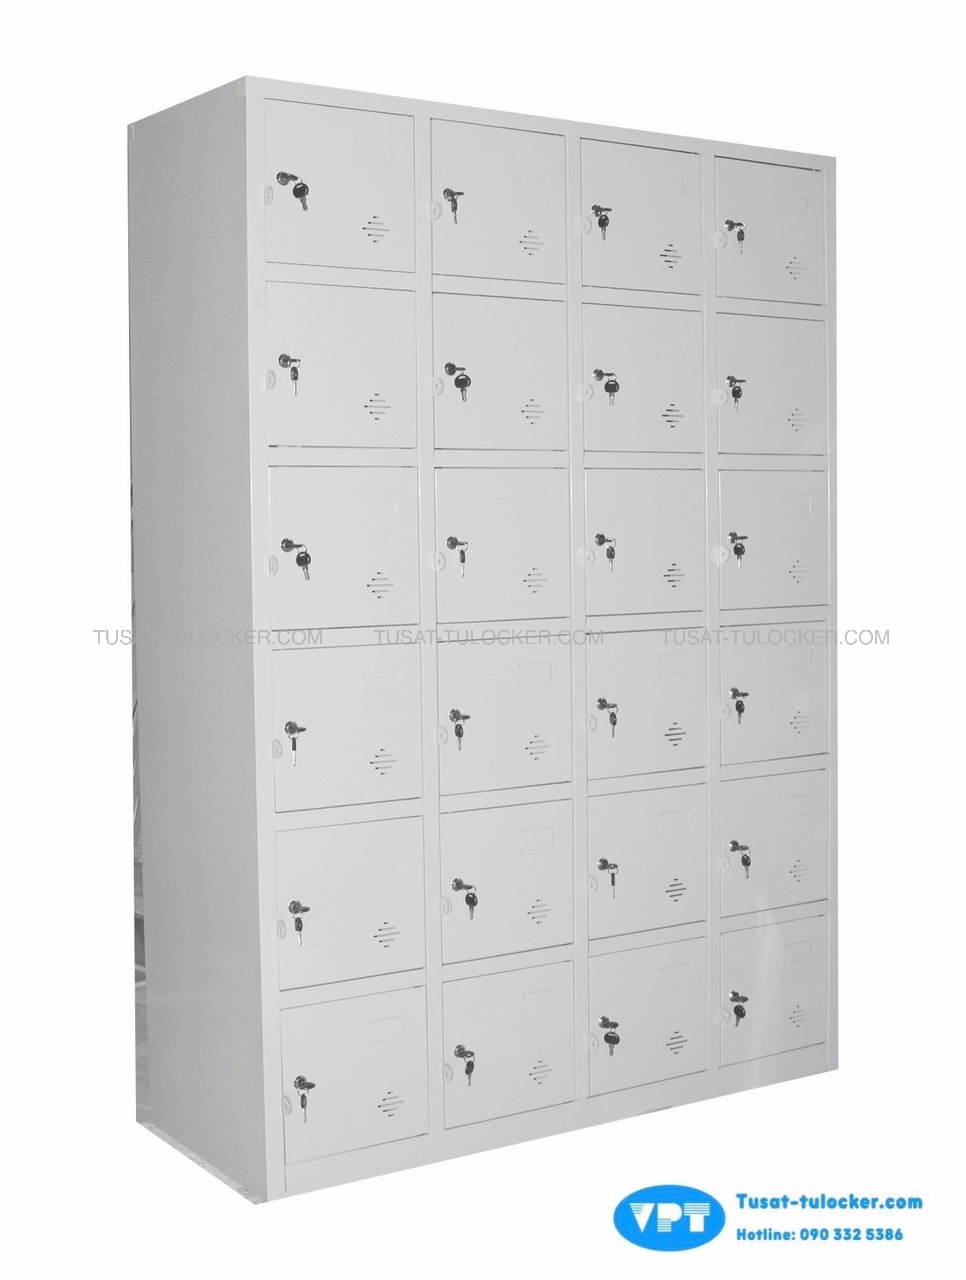 Tủ Locker 24 Cánh VPT 862-4K, Tủ Sắt 24 Cánh Sơn Tĩnh Điện Cao Cấp